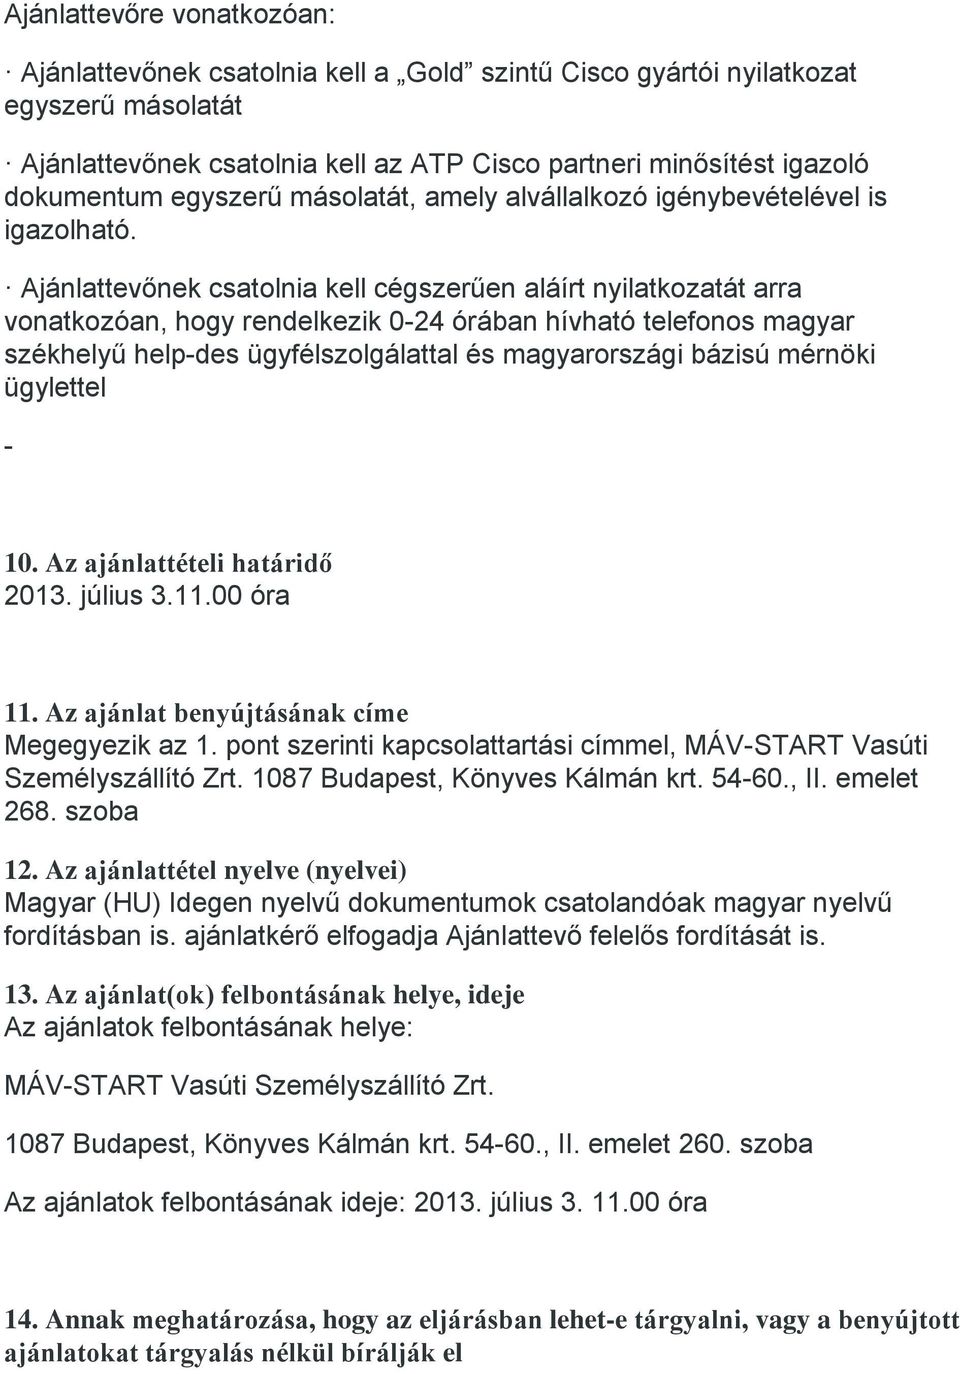 Ajánlattevőnek csatolnia kell cégszerűen aláírt nyilatkozatát arra vonatkozóan, hogy rendelkezik 0-24 órában hívható telefonos magyar székhelyű help-des ügyfélszolgálattal és magyarországi bázisú